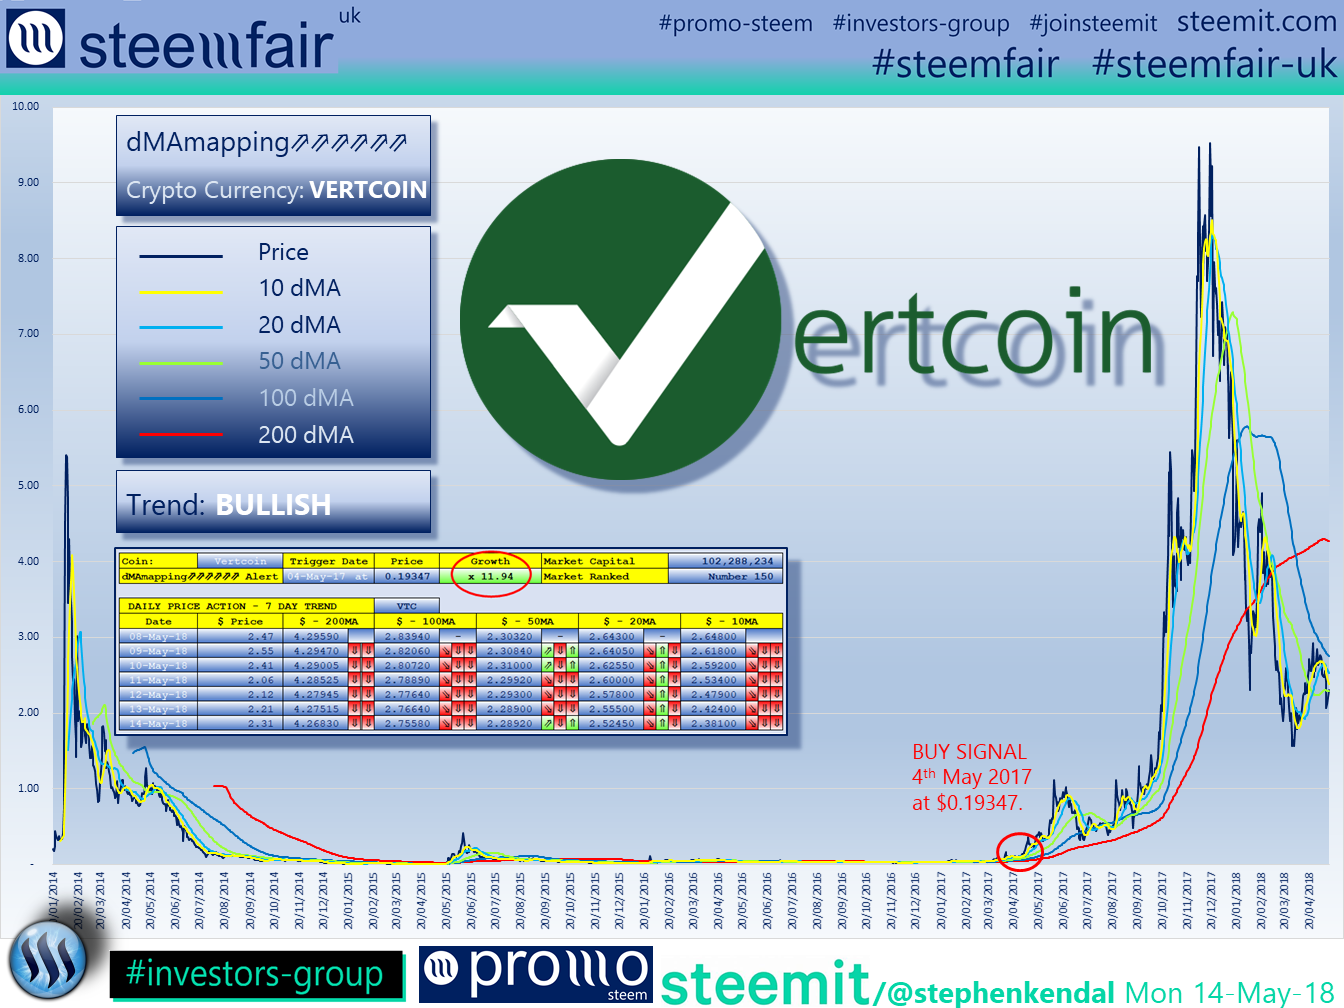 SteemFair SteemFair-uk Promo-Steem Investors-Group Vertcoin